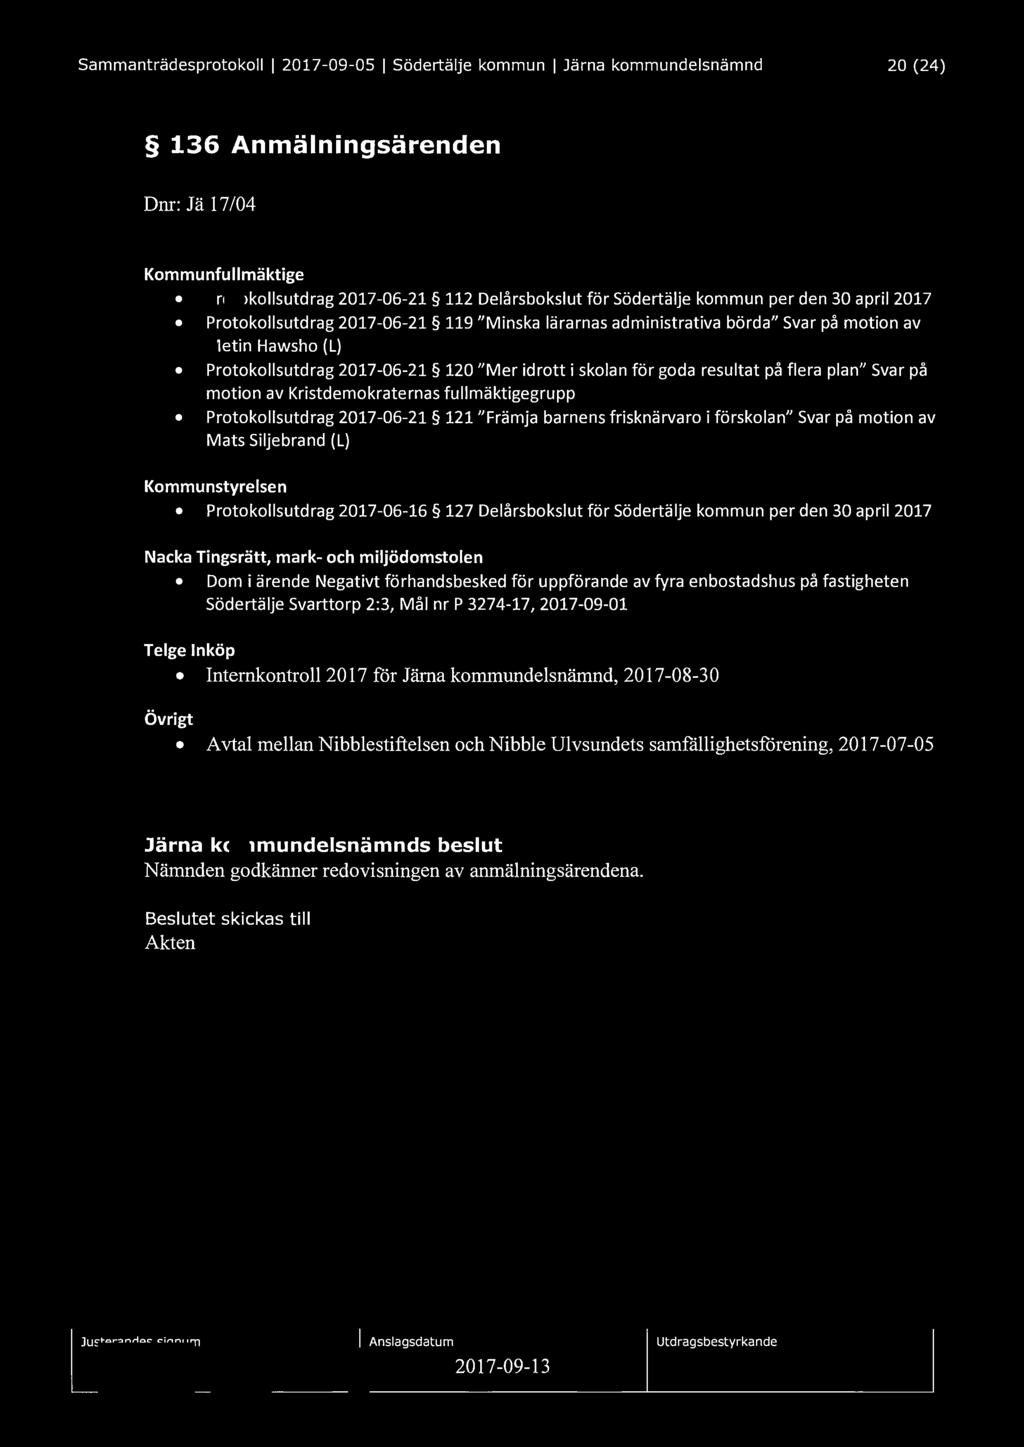 Sammanträdesprotokoll I 2017-09-05 I Södertälje kommun I Järna kommundelsnämnd 20 (24) 136 Anmälningsärenden Dnr: Jä 17 /04 Kommunfullmäktige Protokollsutdrag 2017-06-21 112 Delårsbokslut för